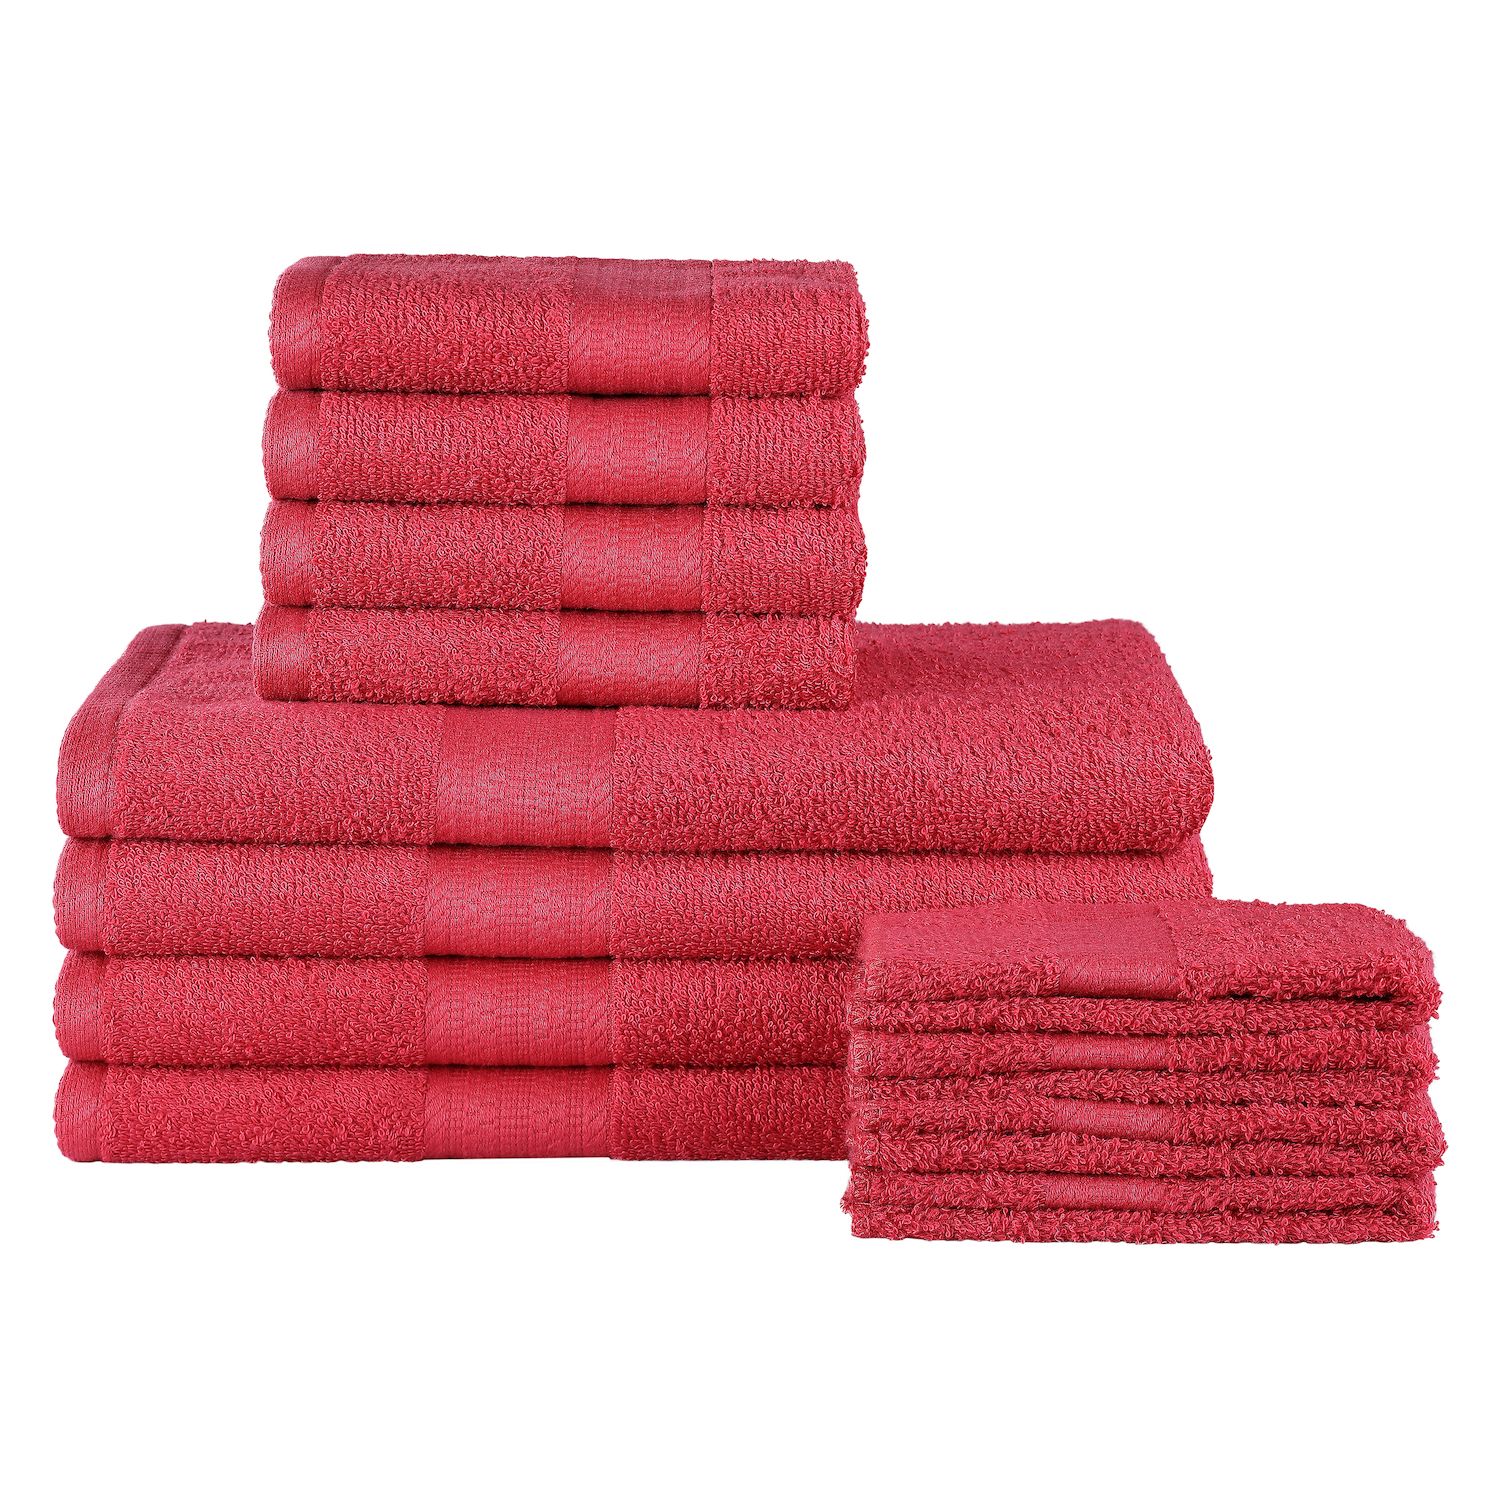 Red Bath Towels - Bathroom, Bed \u0026 Bath 